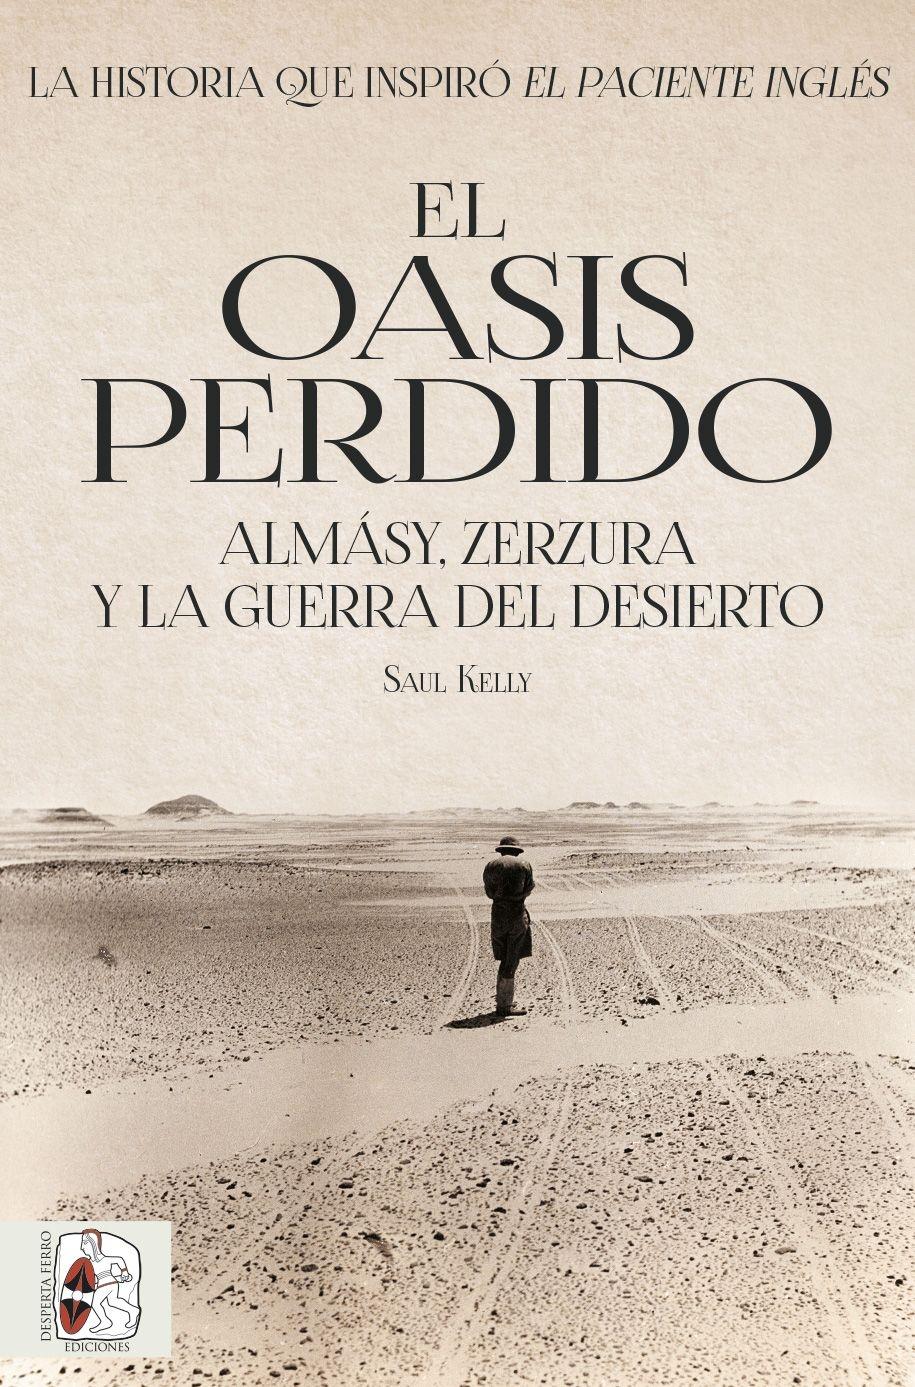 El oasis perdido "Almásy, Zerzura y la guerra del desierto". 